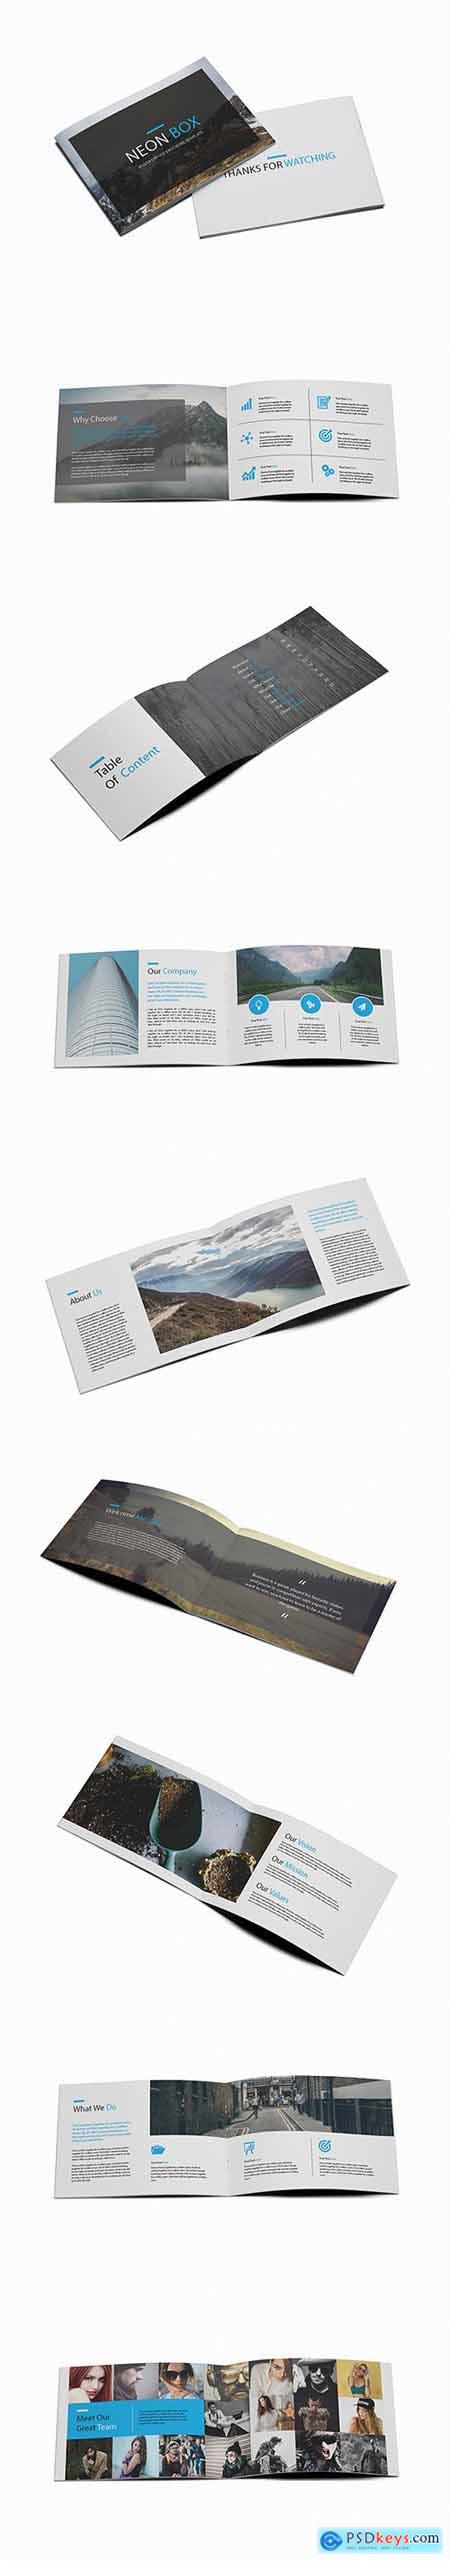 Neon Box - Multipurpose A5 Brochure